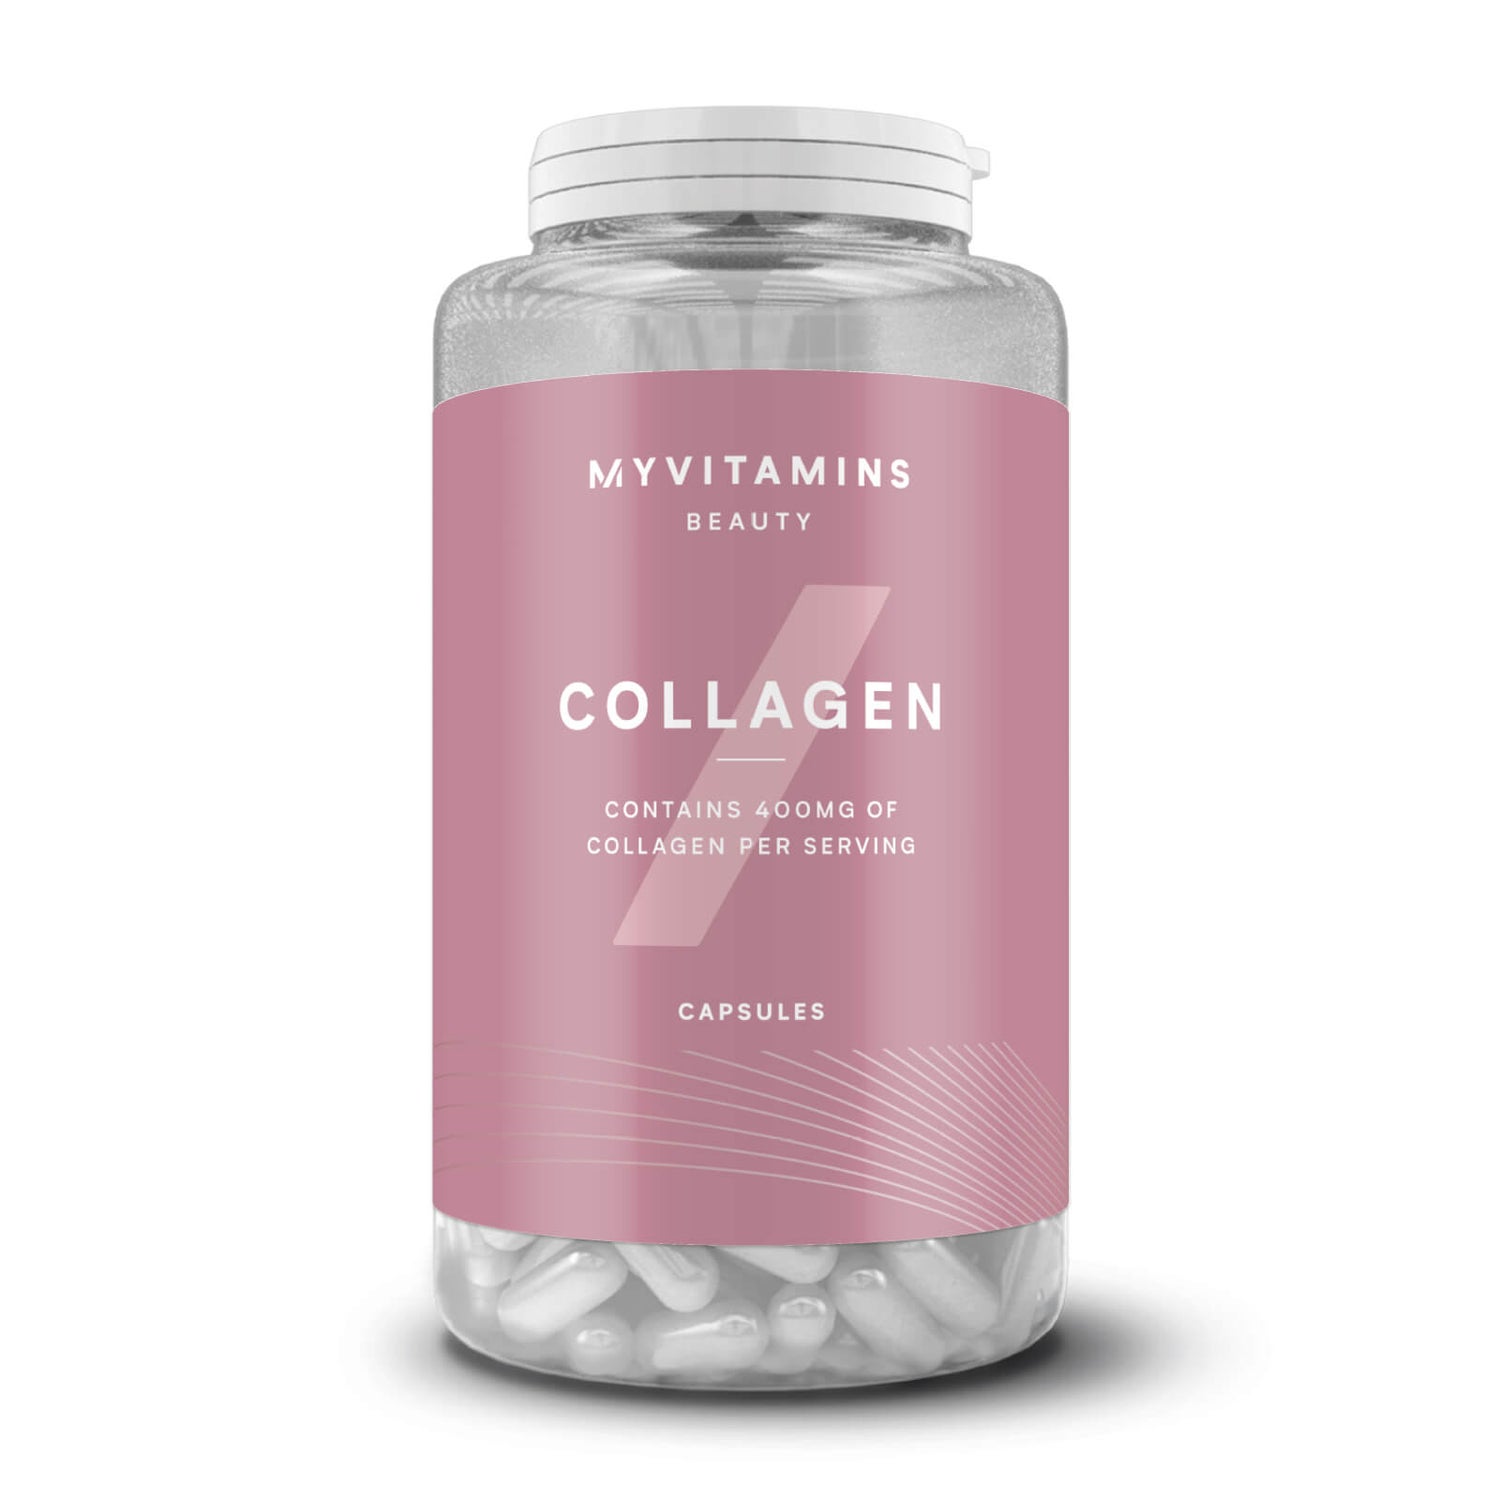 Myvitamins Collagen Capsules